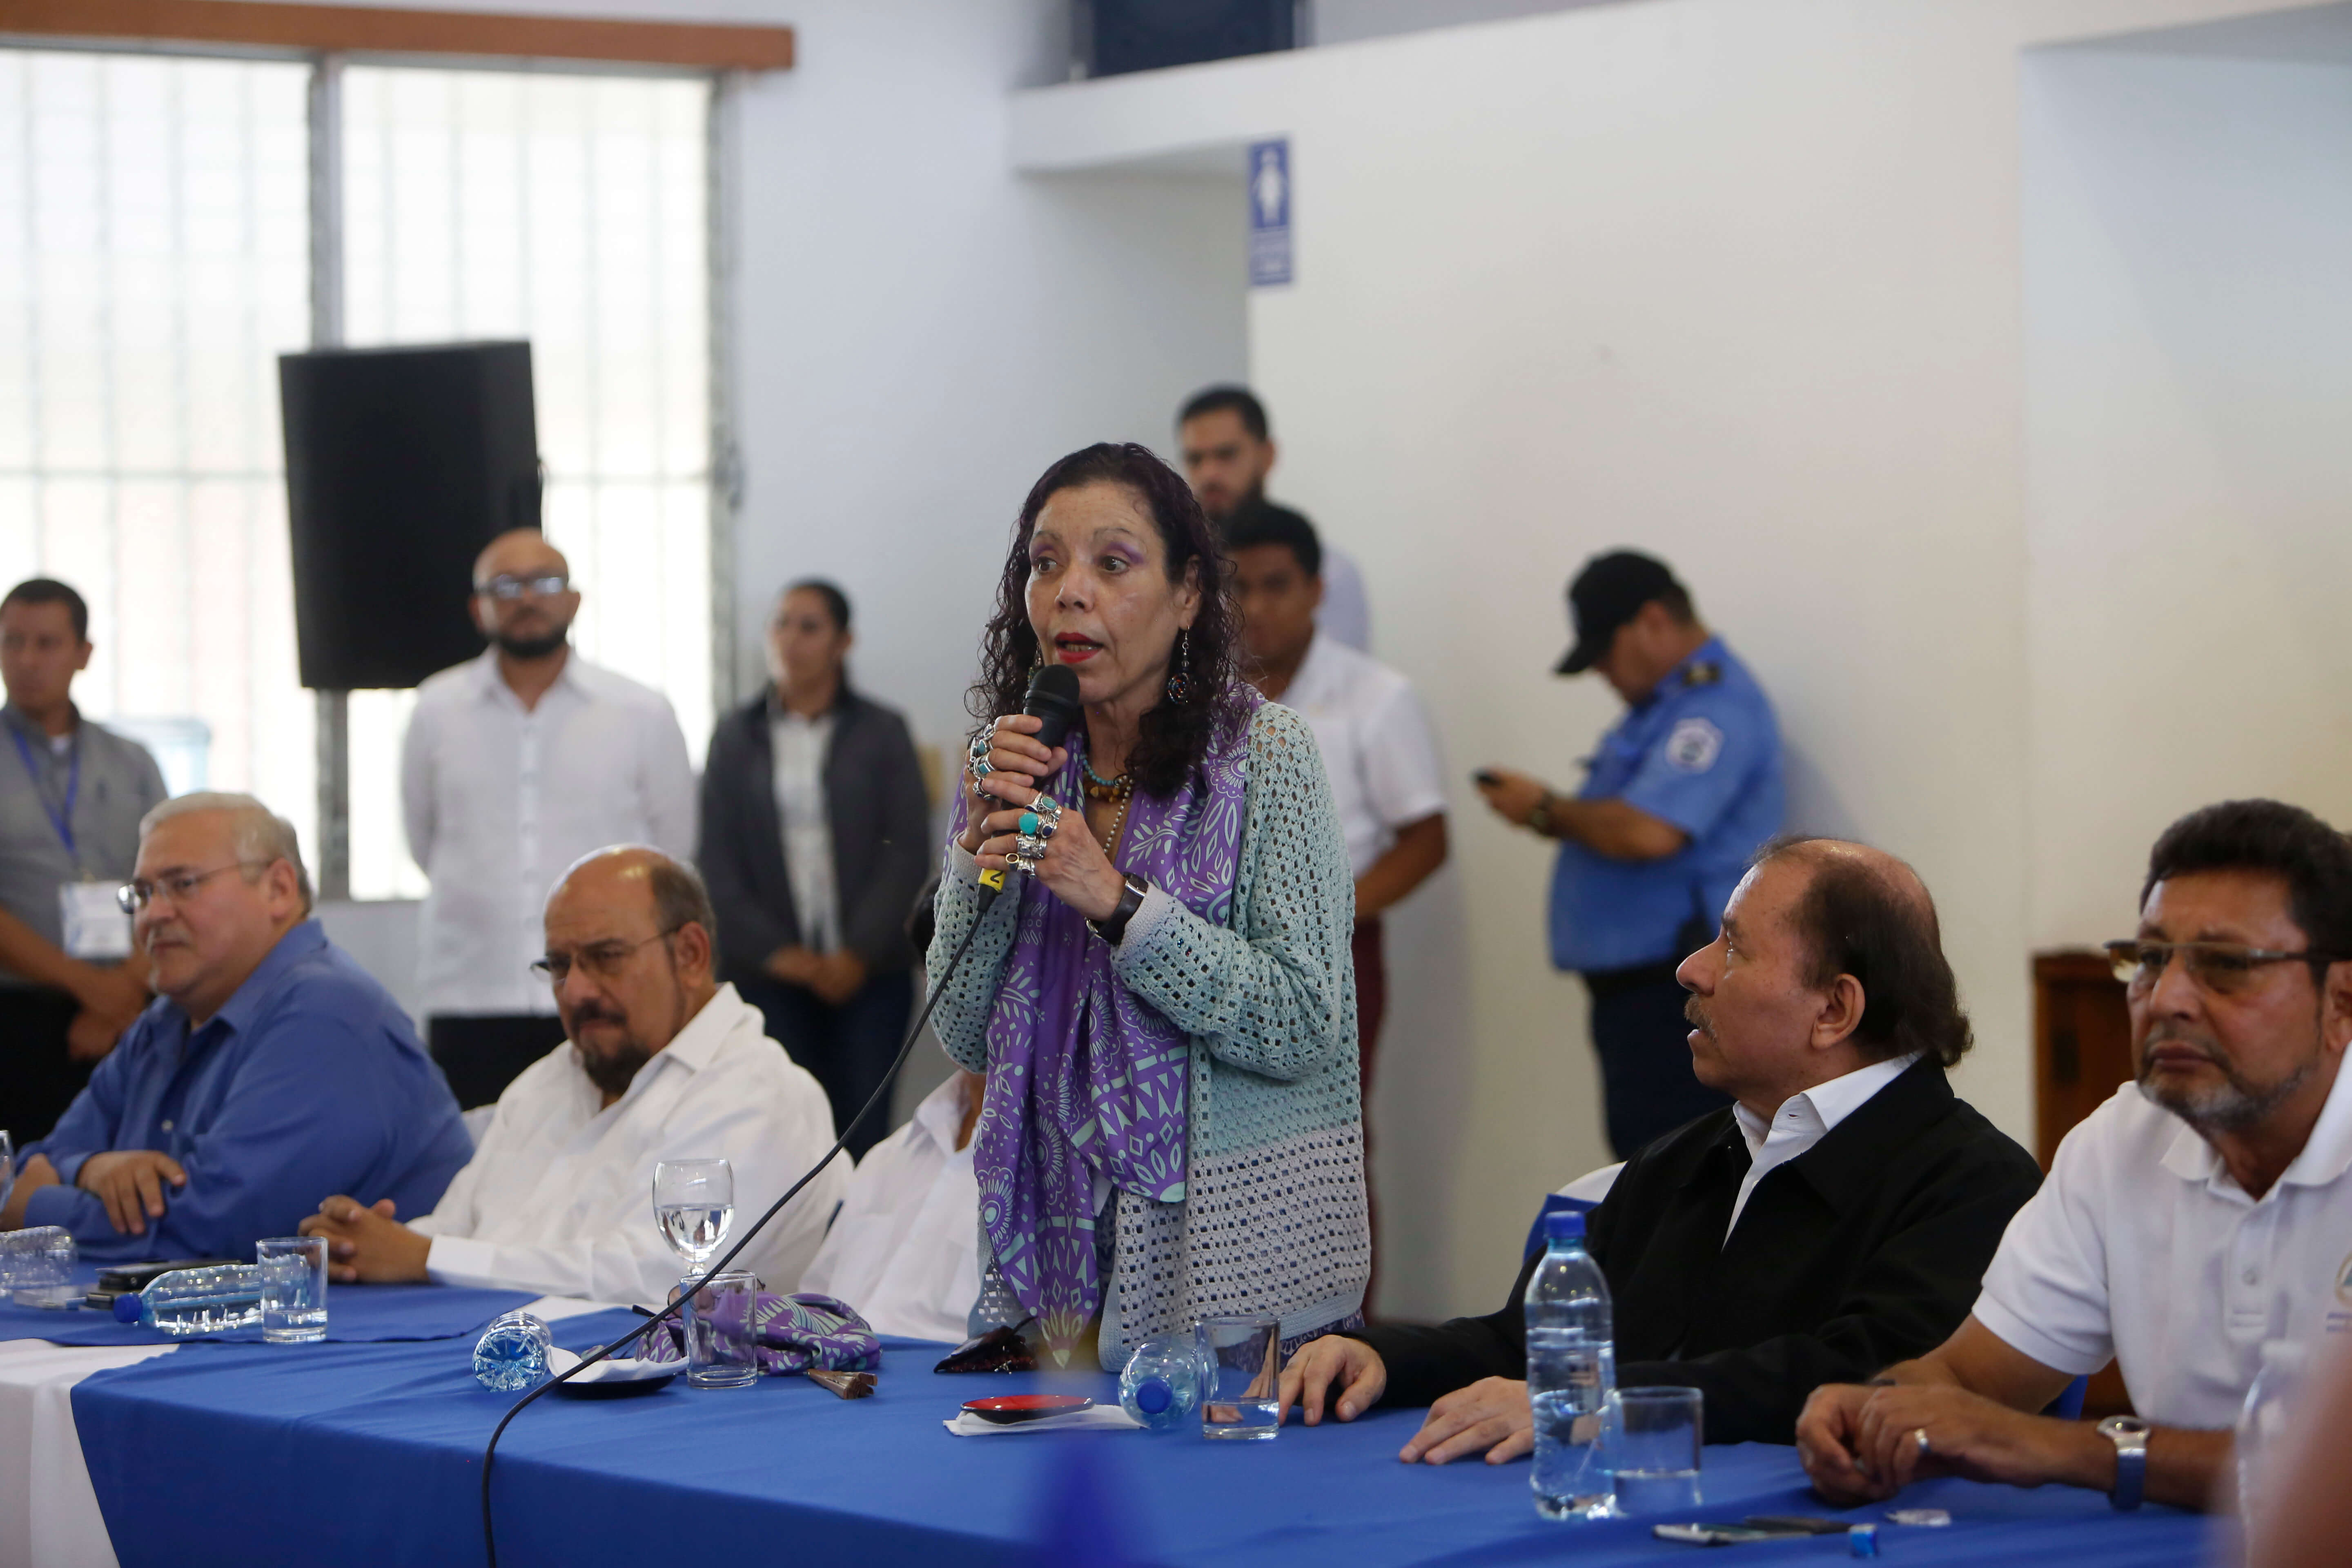 Vicepresidenta Rosario Murillo Nicaragua golpistas justicia